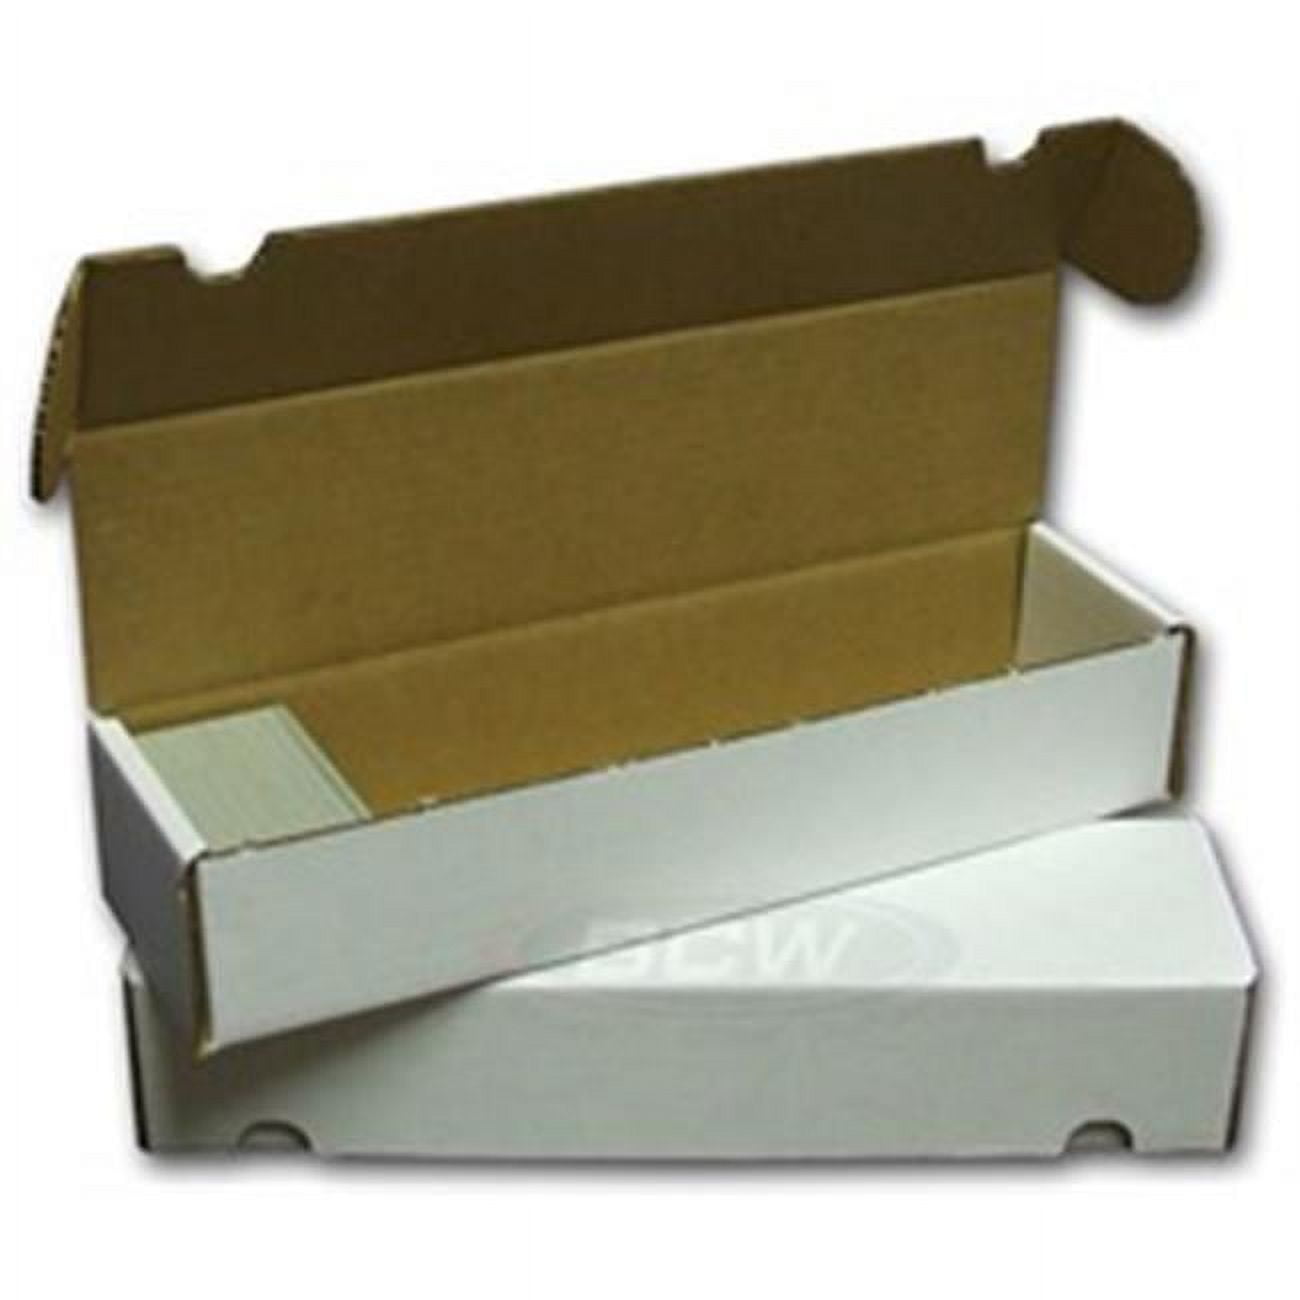 Bundle of 10 BCW DVD / Media / Manga Cardboard Storage Boxes